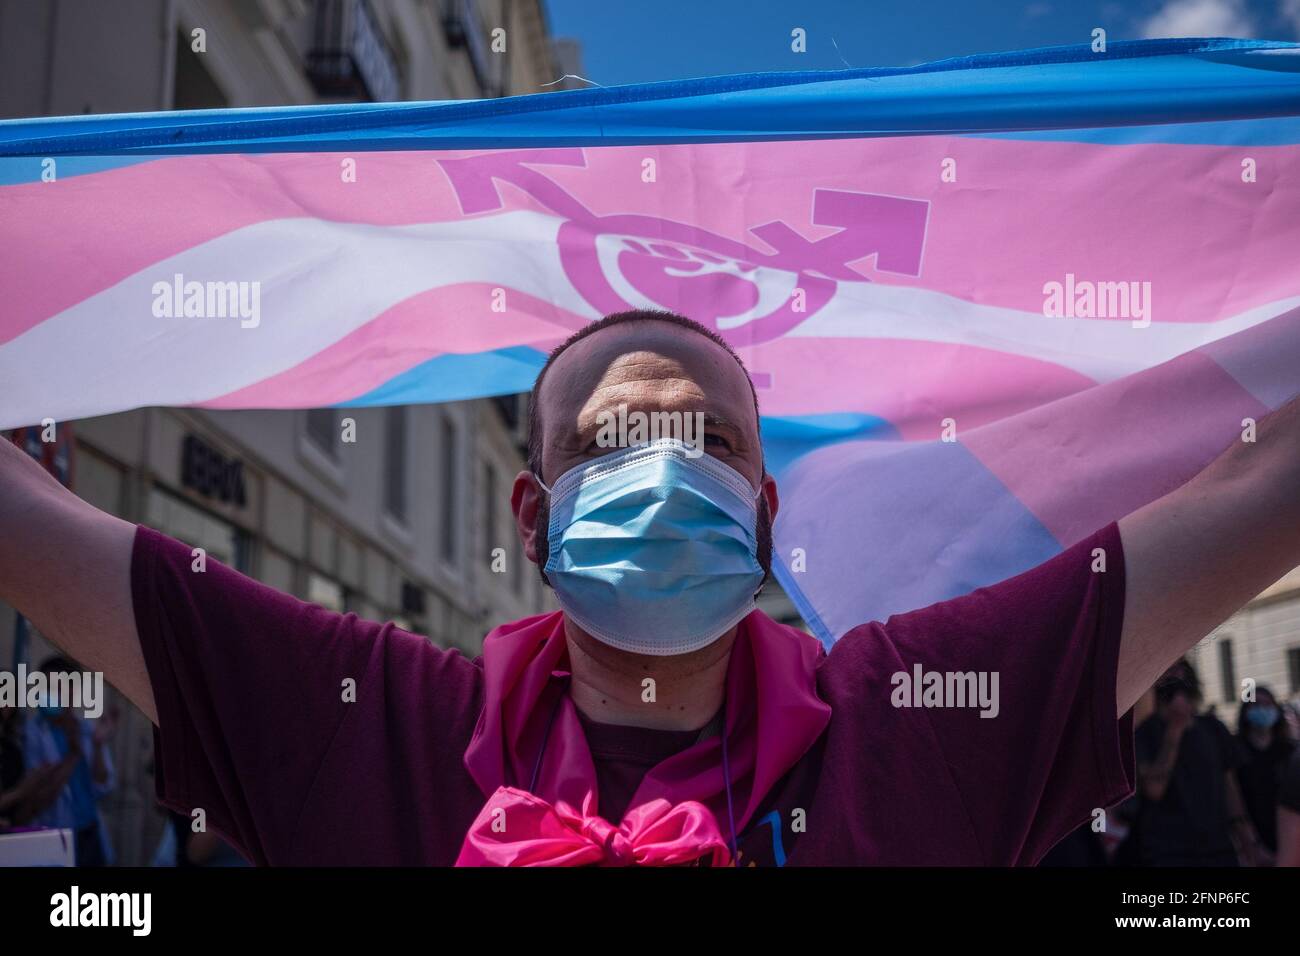 Un attivista che indossa un facemask è visto tenere la bandiera trans durante la protesta. Attivisti della Trans Community protestano al di fuori del Congresso dei deputati. La votazione per l'elaborazione della "legge statale trans" è discussa martedì 18 maggio, in occasione della plenaria del Congresso spagnolo. Foto Stock